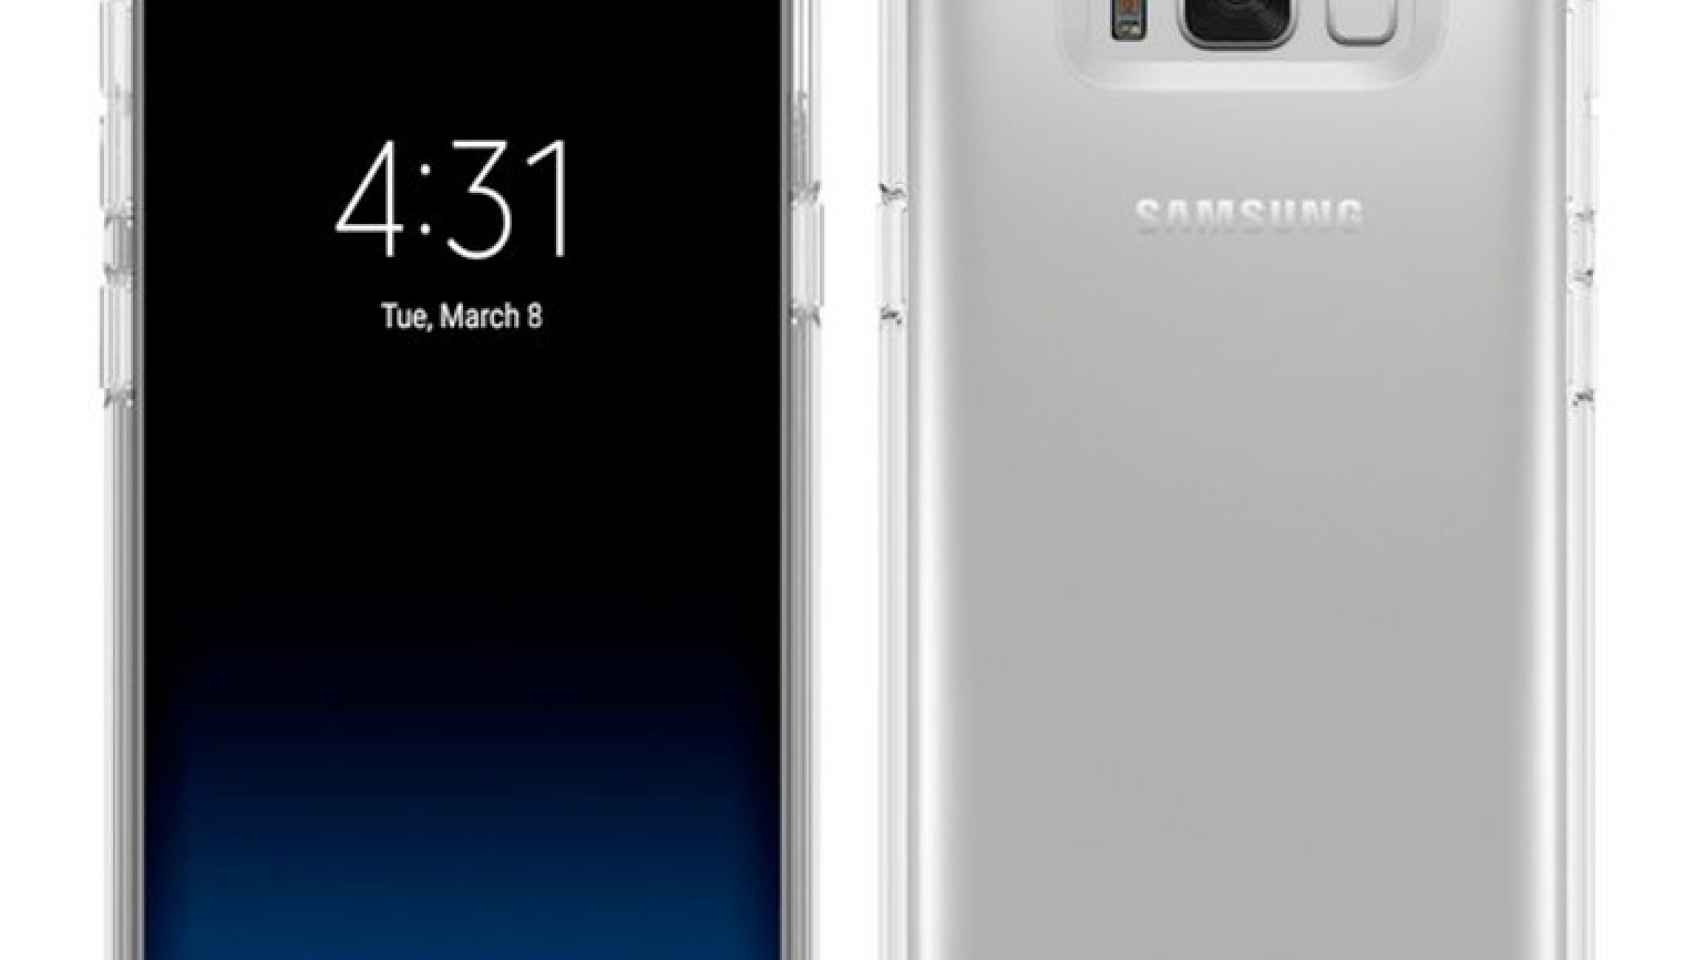 Los botones del Samsung Galaxy S8 aparecen en una fotografía y tienen diseño propio